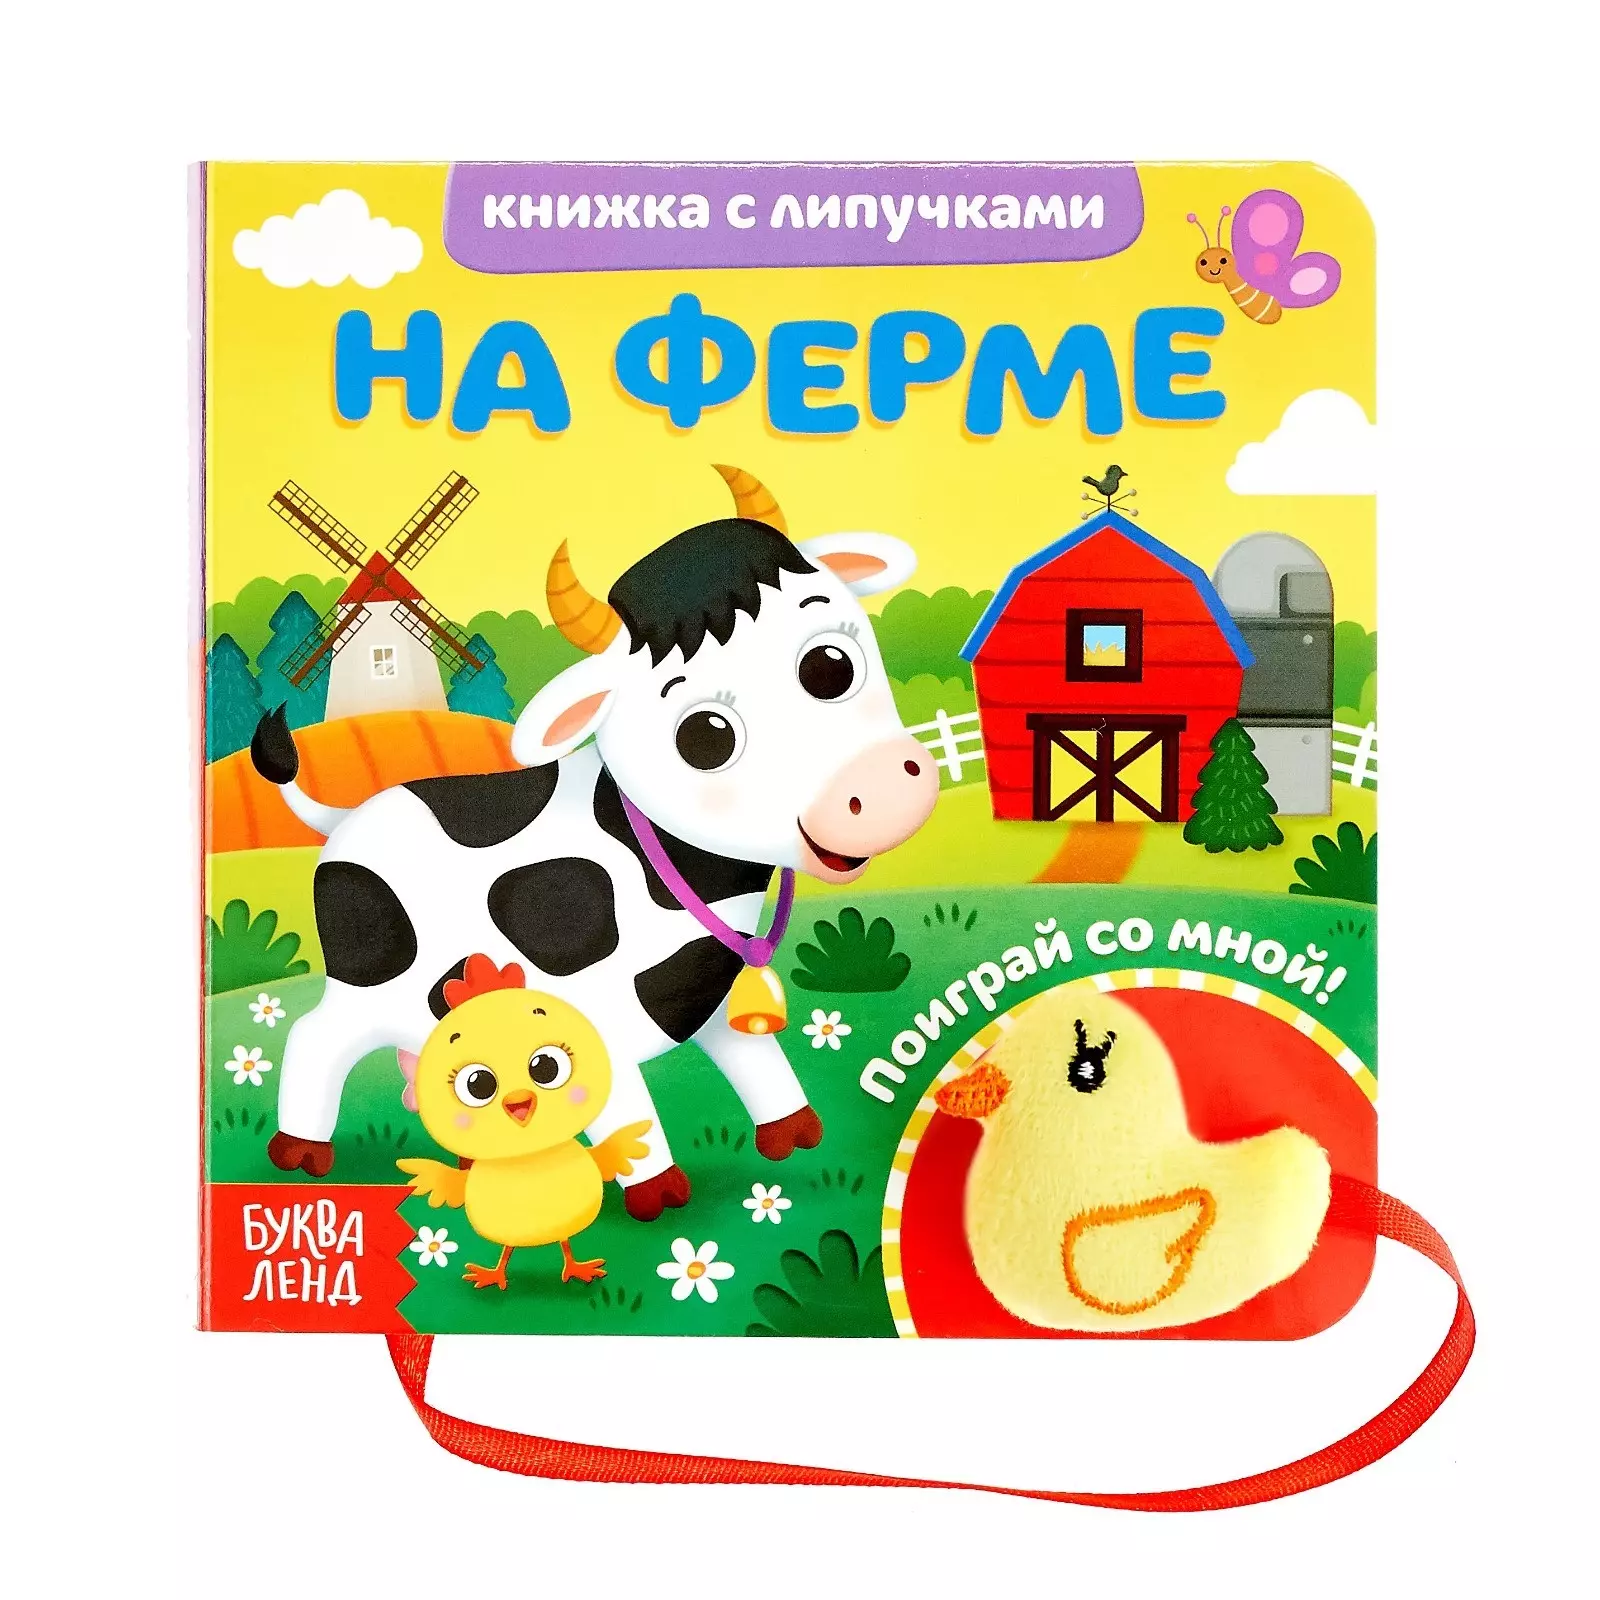 Сачкова Евгения - Книжка с липучками и игрушкой "На ферме"